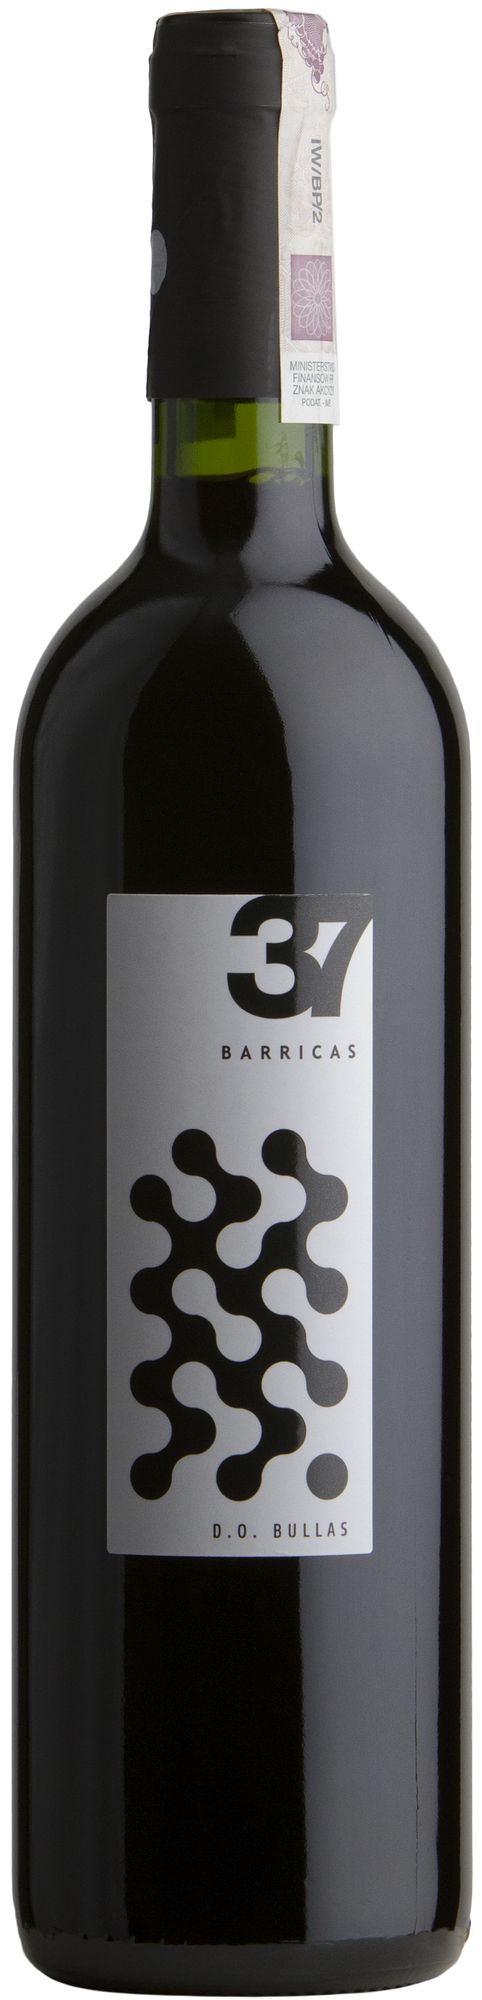 Wino Balcona 37 barricas Bullas DO